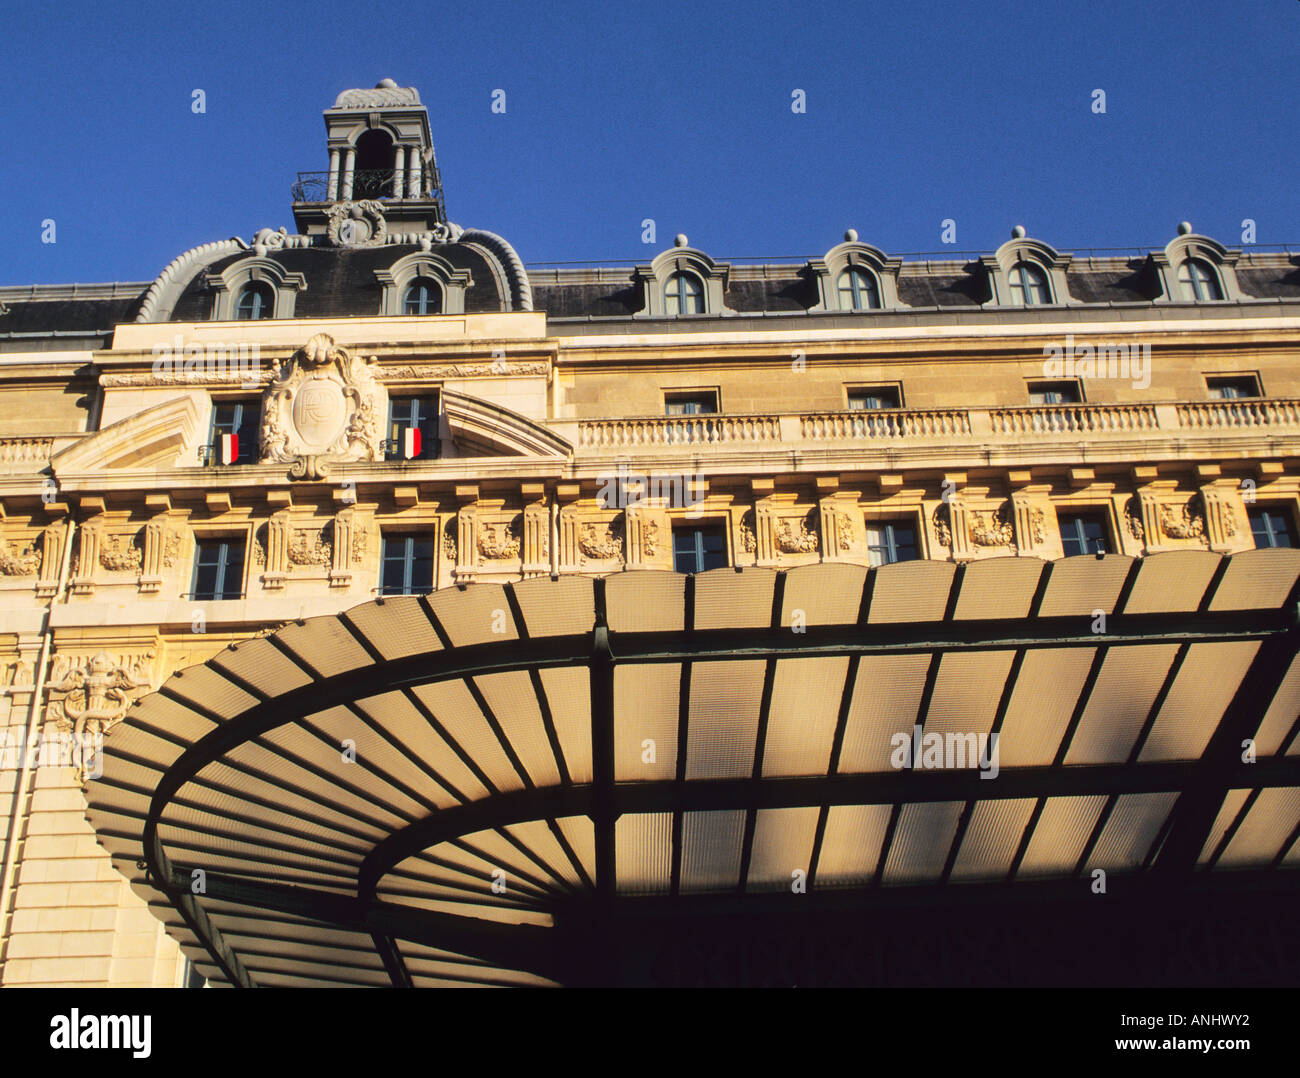 Francia Parigi Musee d'Orsay. Belle Epoque in vetro marquee sul 19 ° secolo Gare d'Orsay edificio. Sito patrimonio dell'umanità dell'UNESCO. Foto Stock